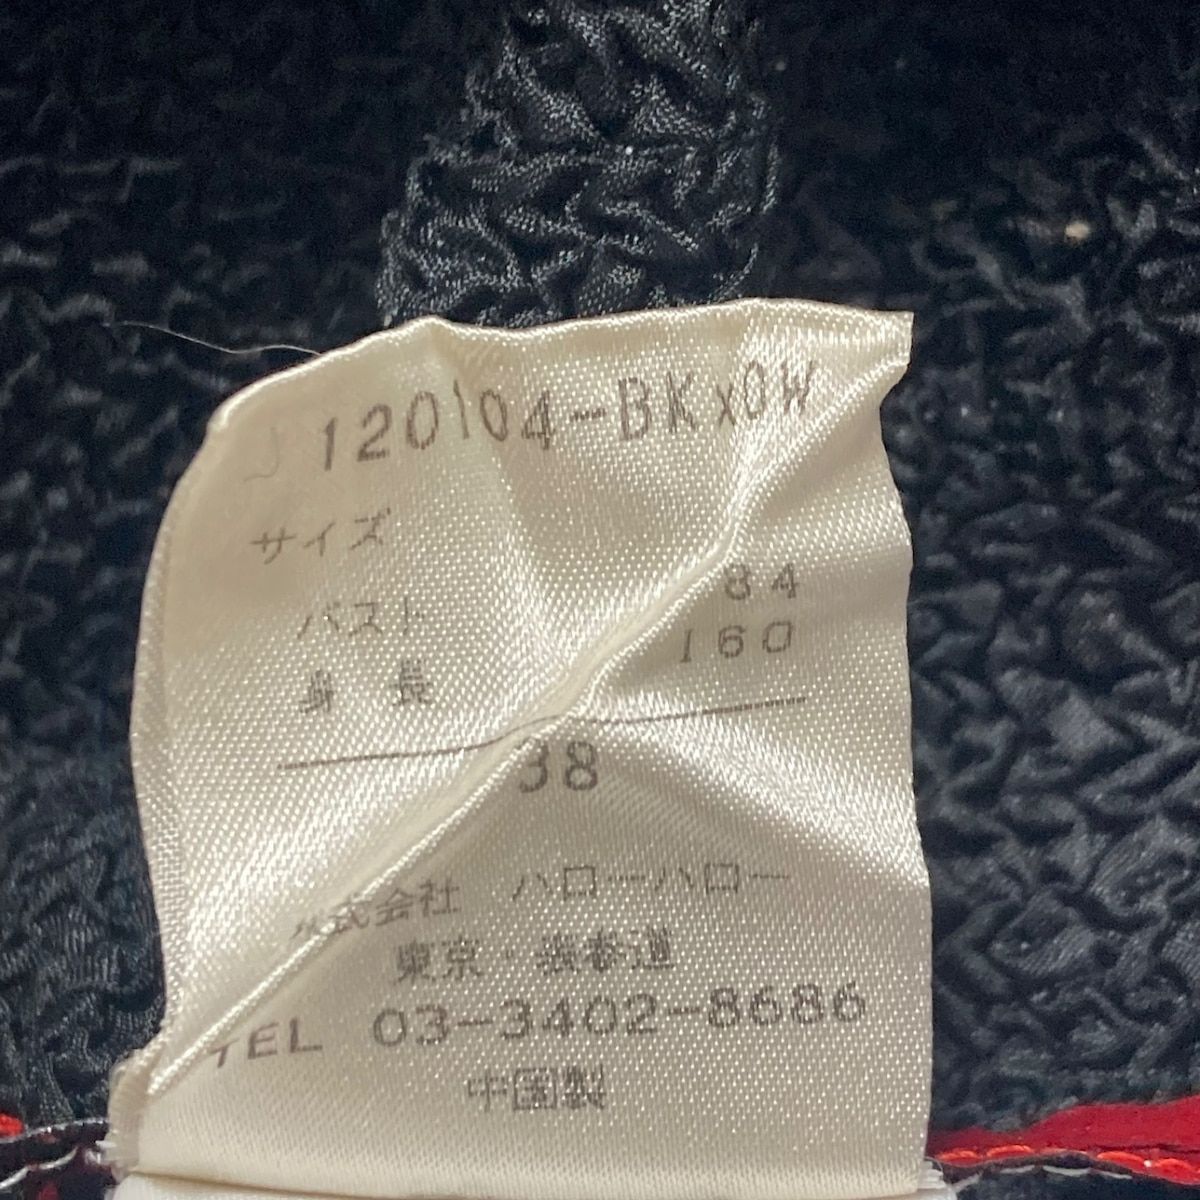 NOKO OHNO(ノコオーノ) ジャケット サイズ38 M レディース - 黒×グレー×白 半袖/フラワー(花)/ラインストーン/シワ加工/春/夏